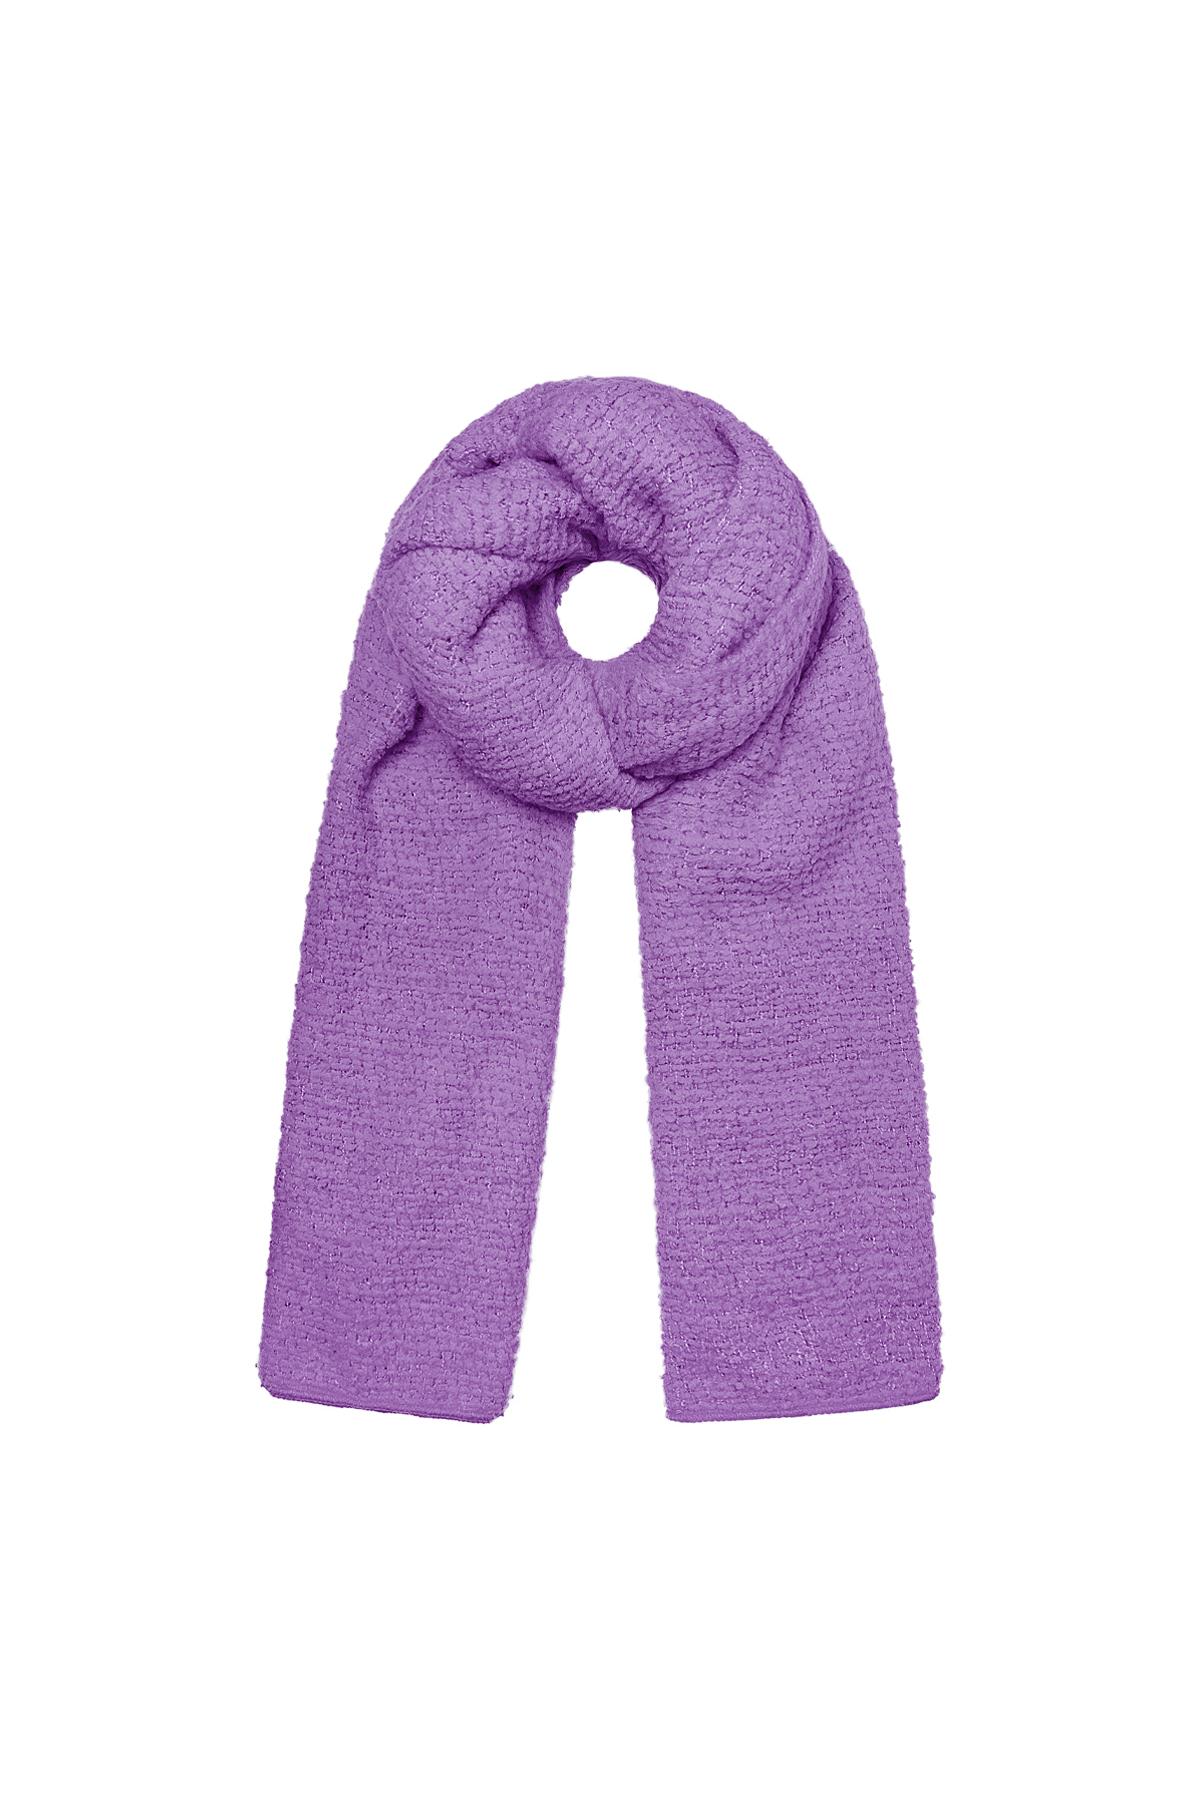 Mor kabartma desenli kışlık eşarp Purple Polyester h5 